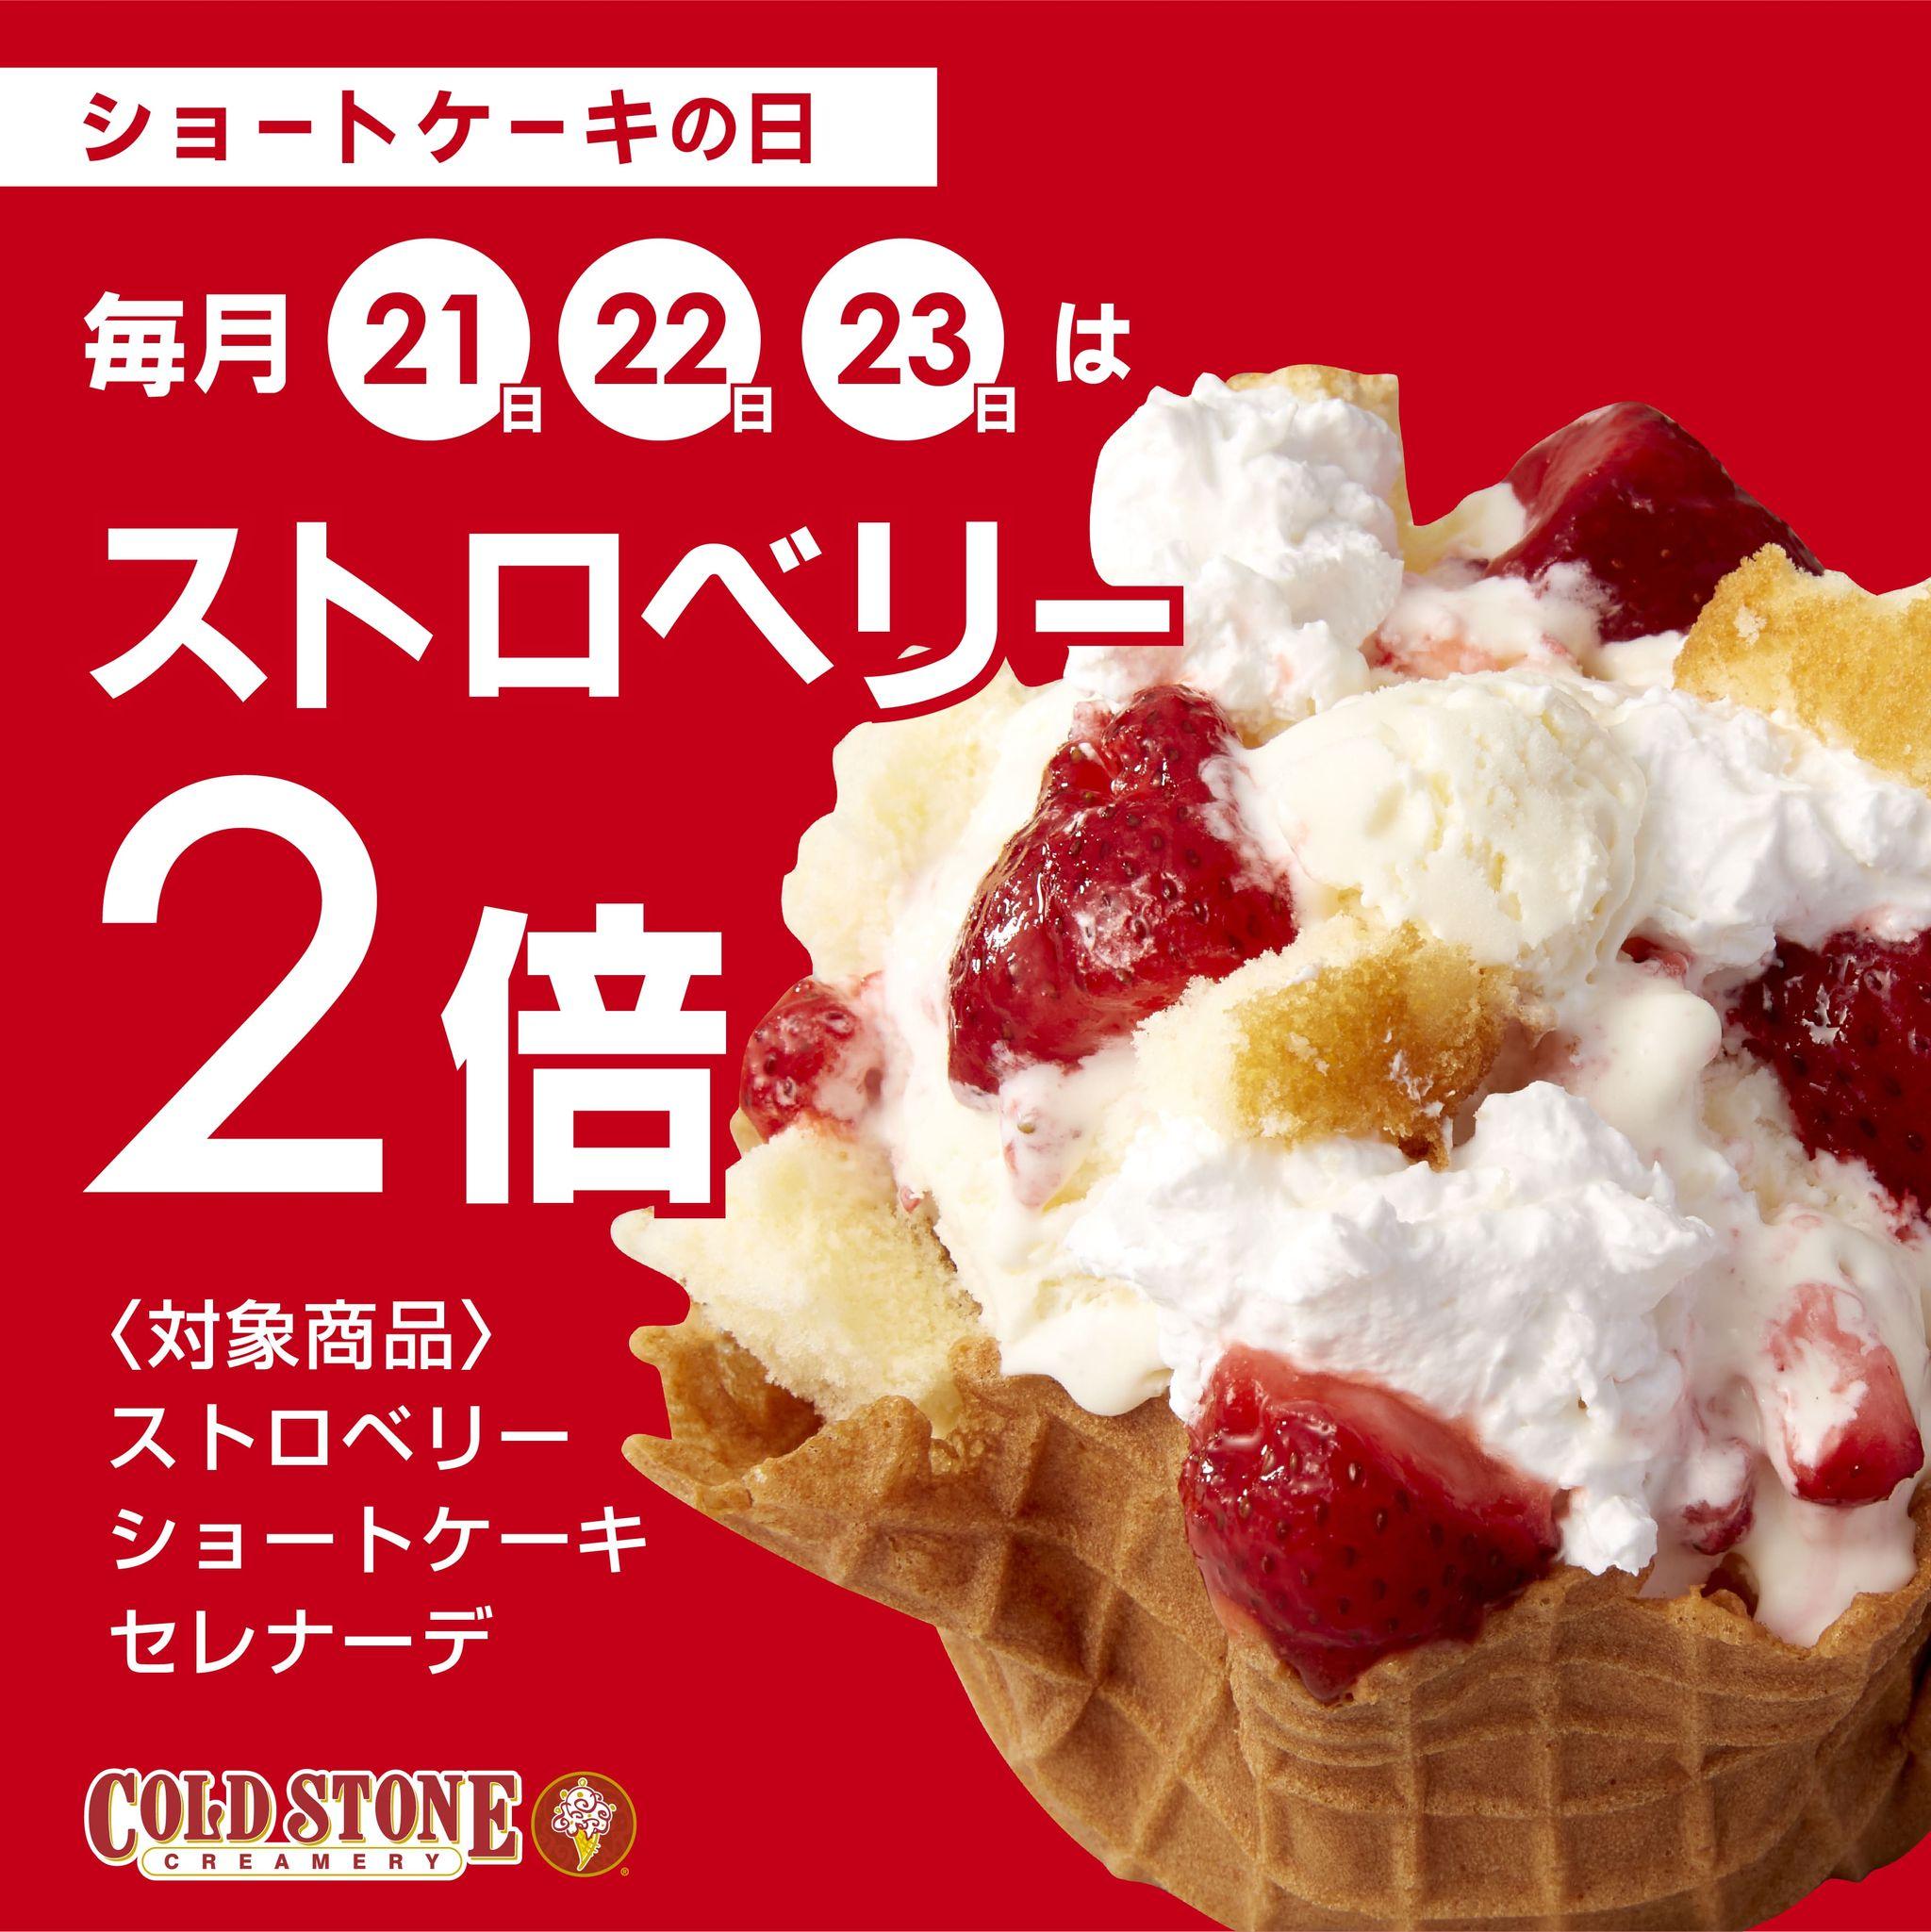 【 コールド・ストーン・クリーマリーも始めます！ 】 毎月22日は 『ショートケーキの日』 アイスクリーム “ショートケーキ” を毎月お得にお楽しみください！